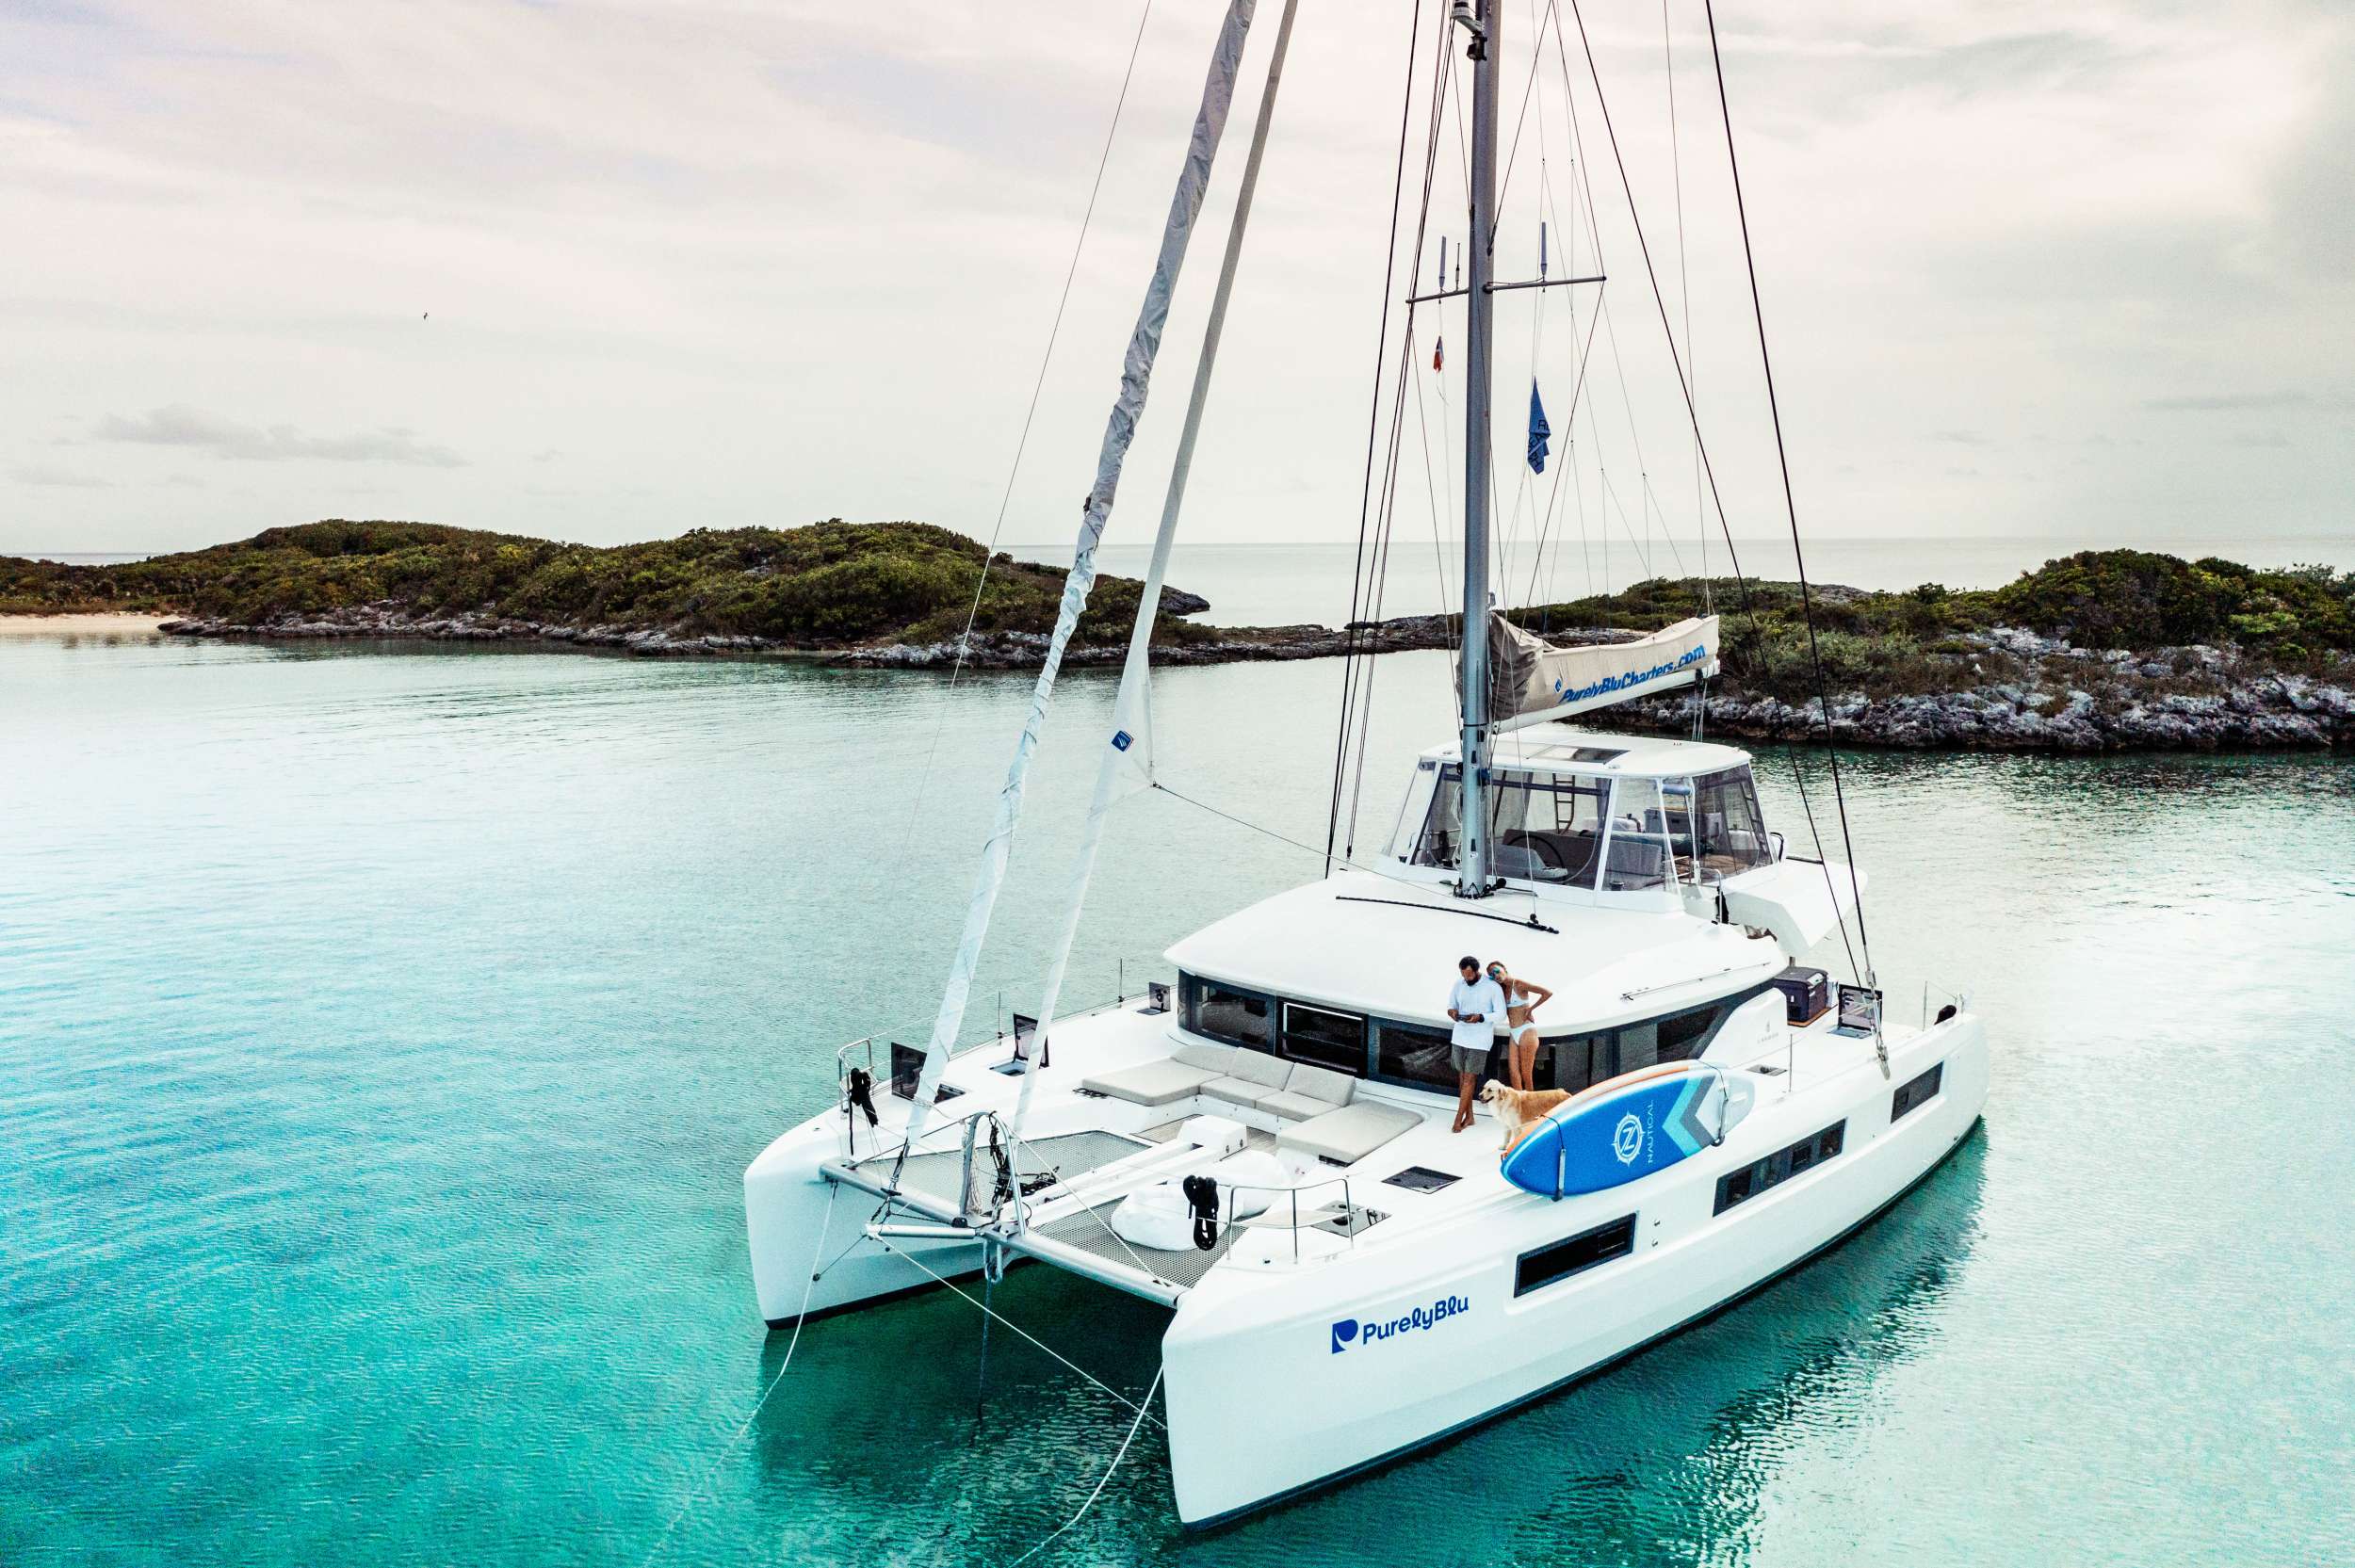 PurelyBlu Crewed Catamaran Charter at Anchor in the Bahamas